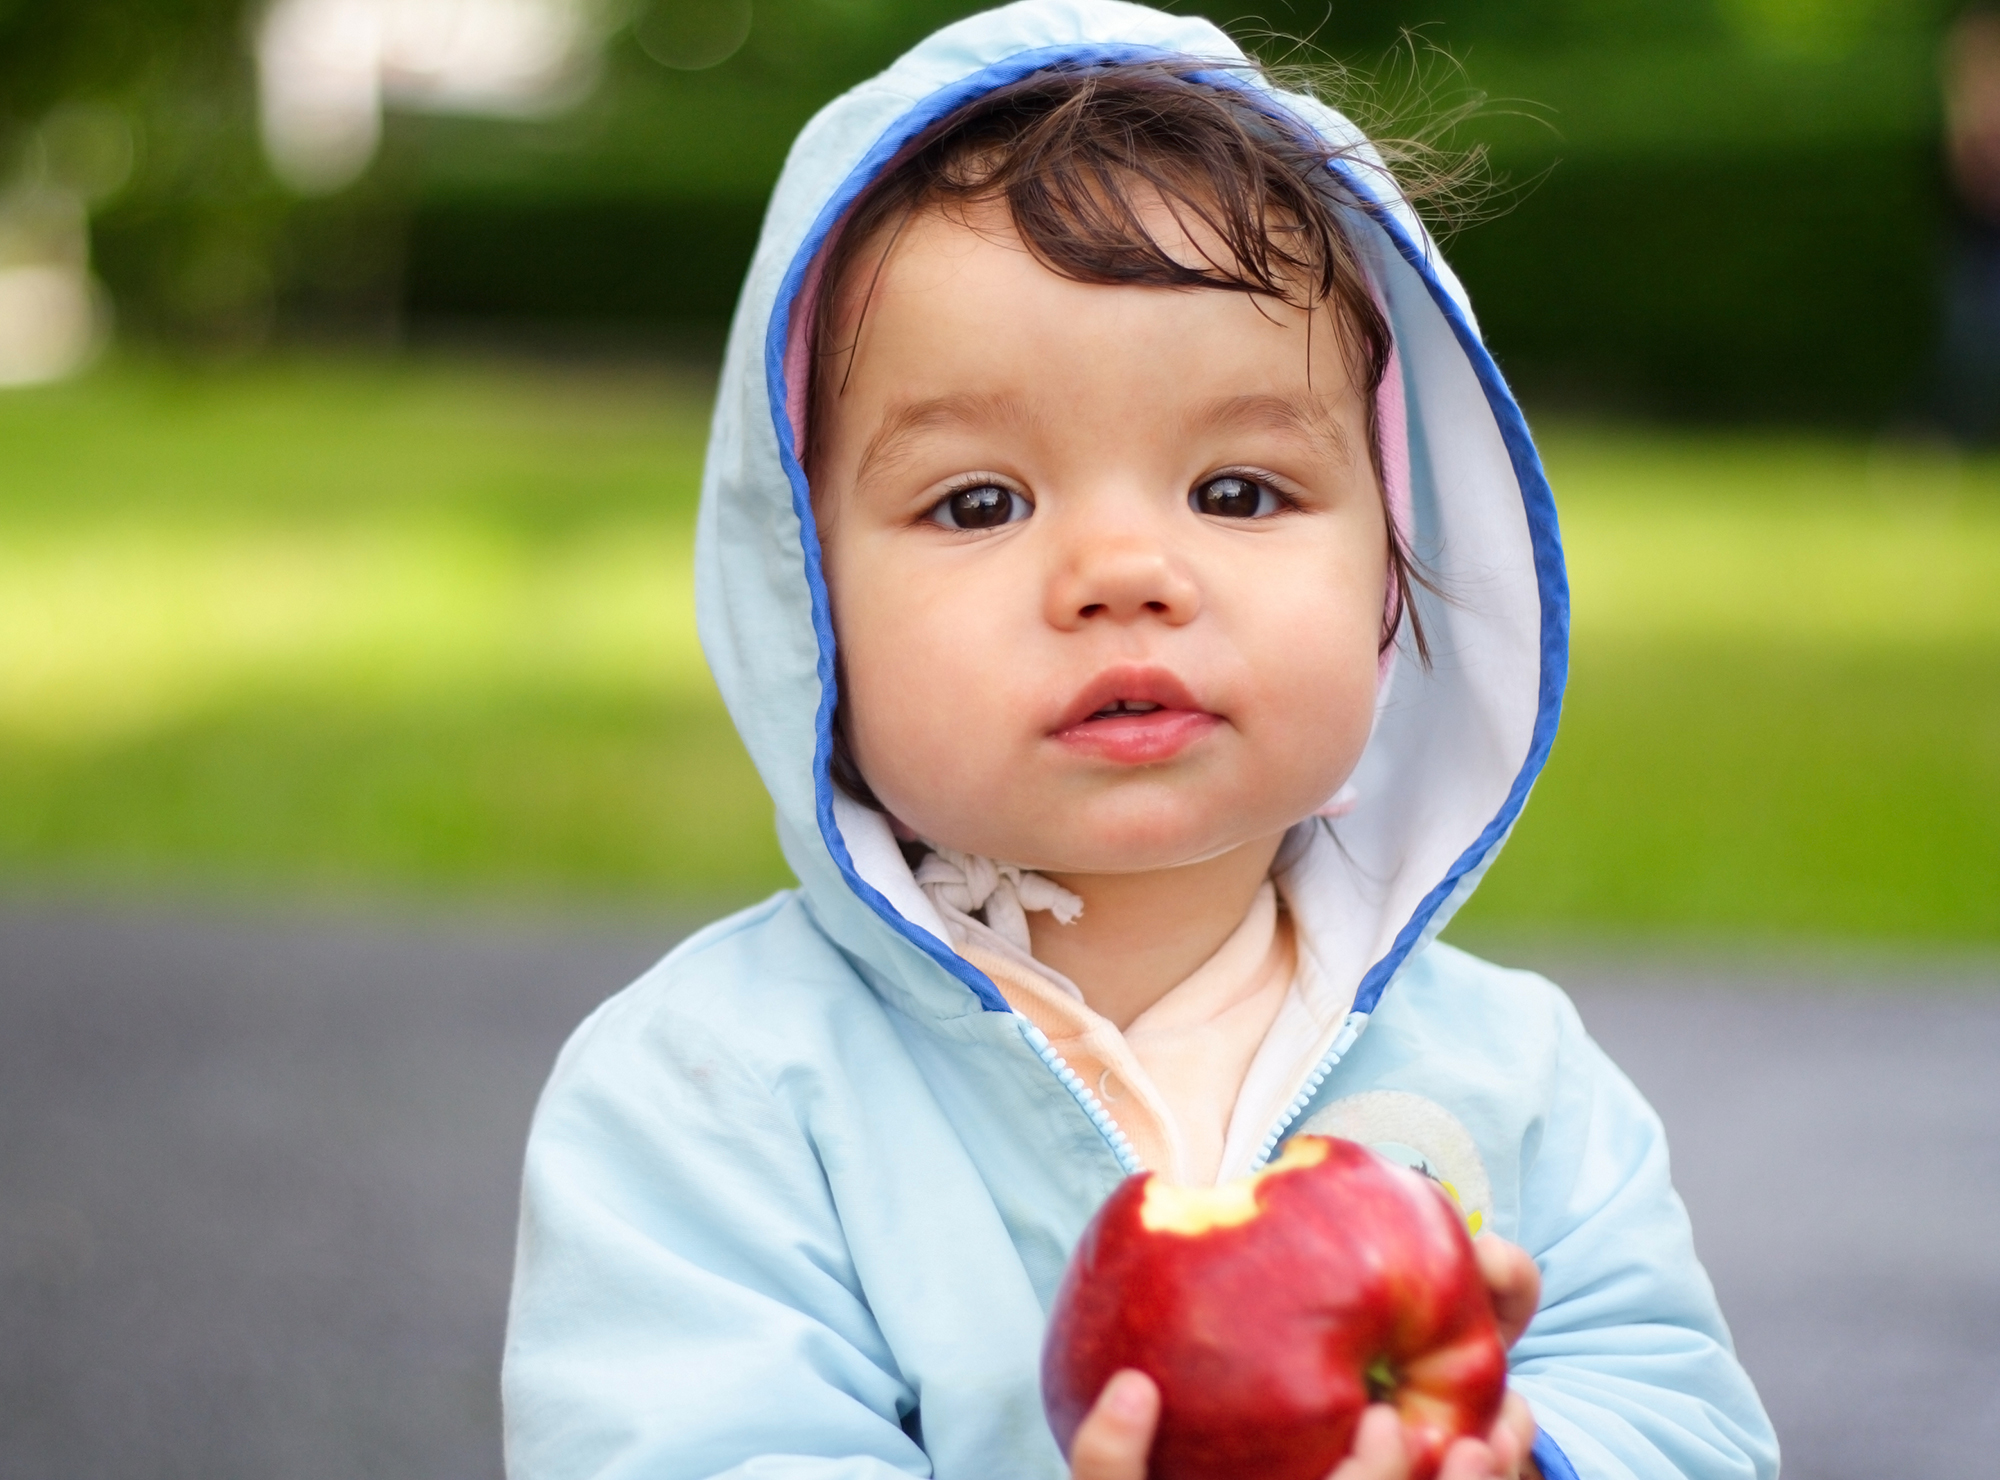 Kleinkind mit Apfel in der Hand